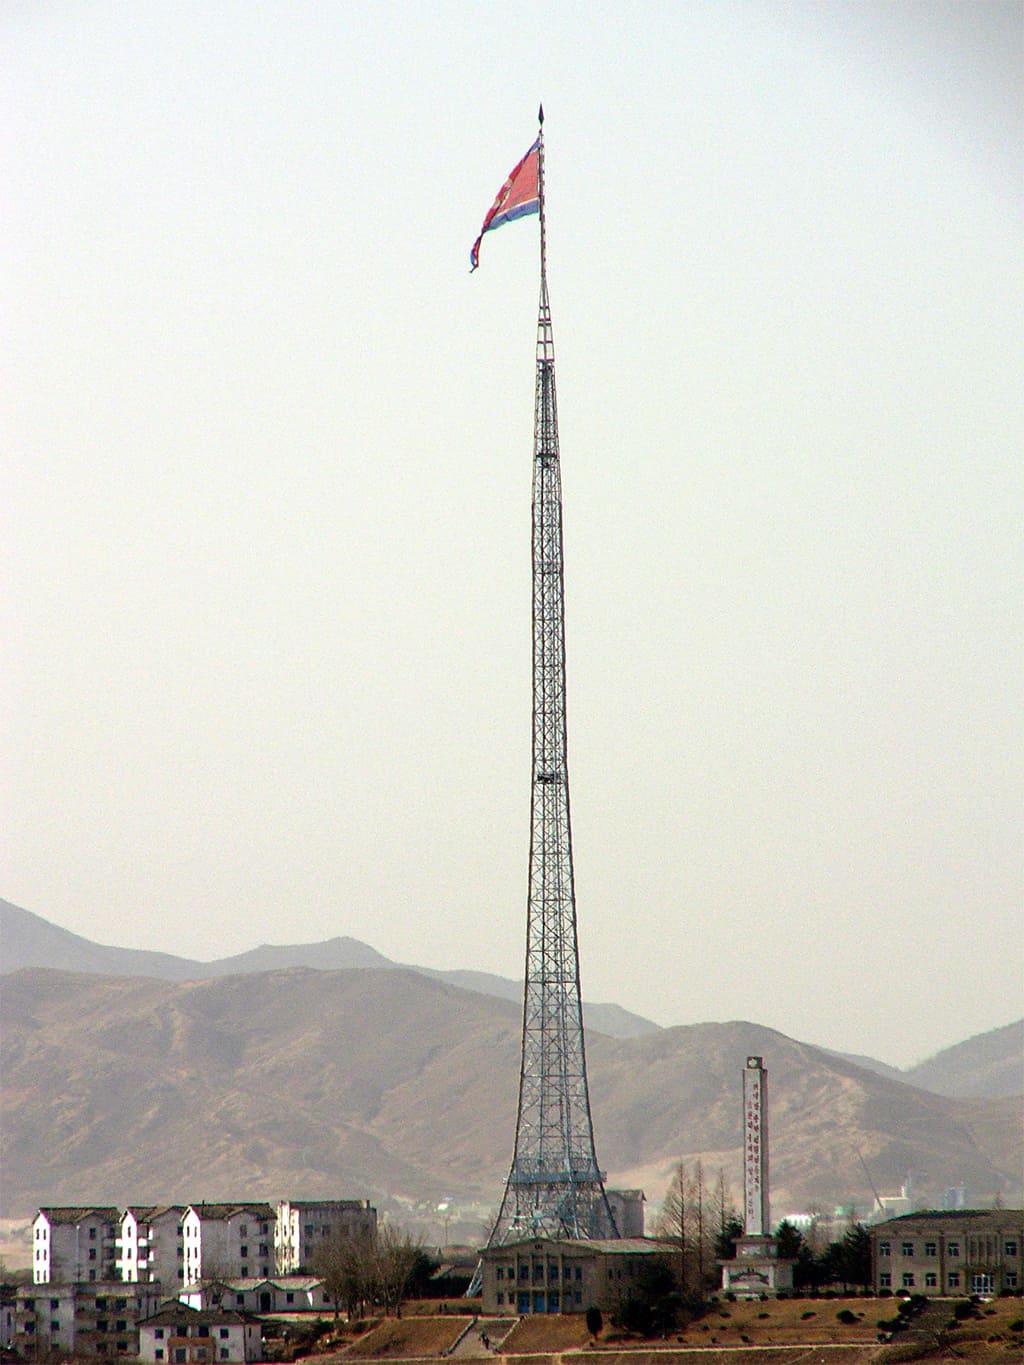 تعتبر سارية علم قرية (كيجونغ دونغ) الزائفة في كوريا الشمالية رابع أطول سارية علم في العالم، حيث بلغ ارتفاعها 160 مترًا.